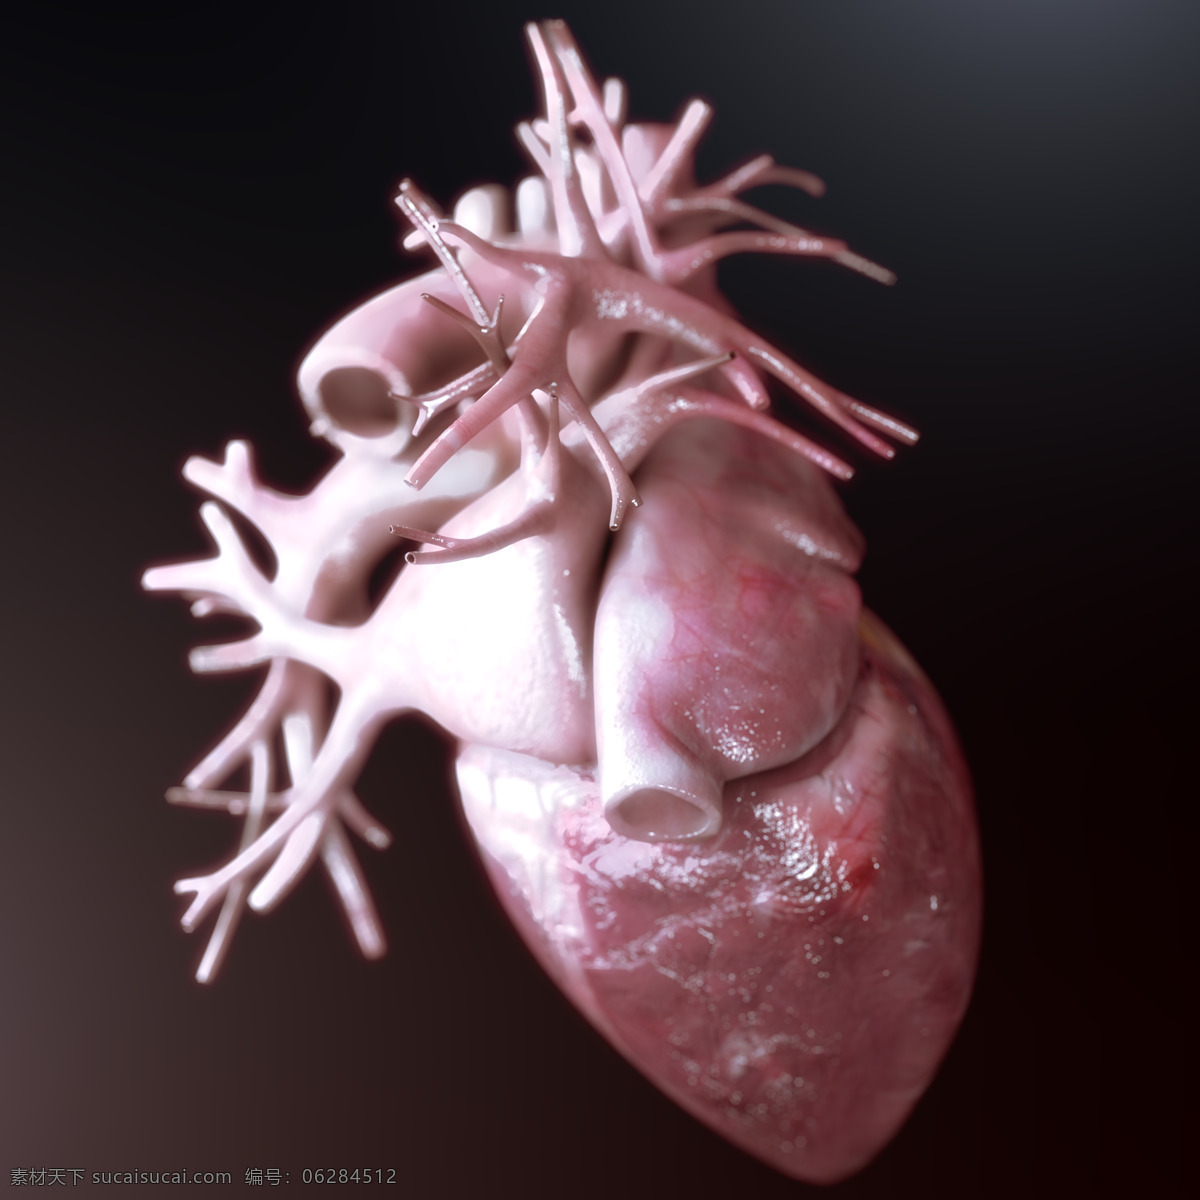 人体 内脏 器官 人体内脏器官 心脏 人体器官 心脏模型 心血管 医疗素材 人体器官图 人物图片